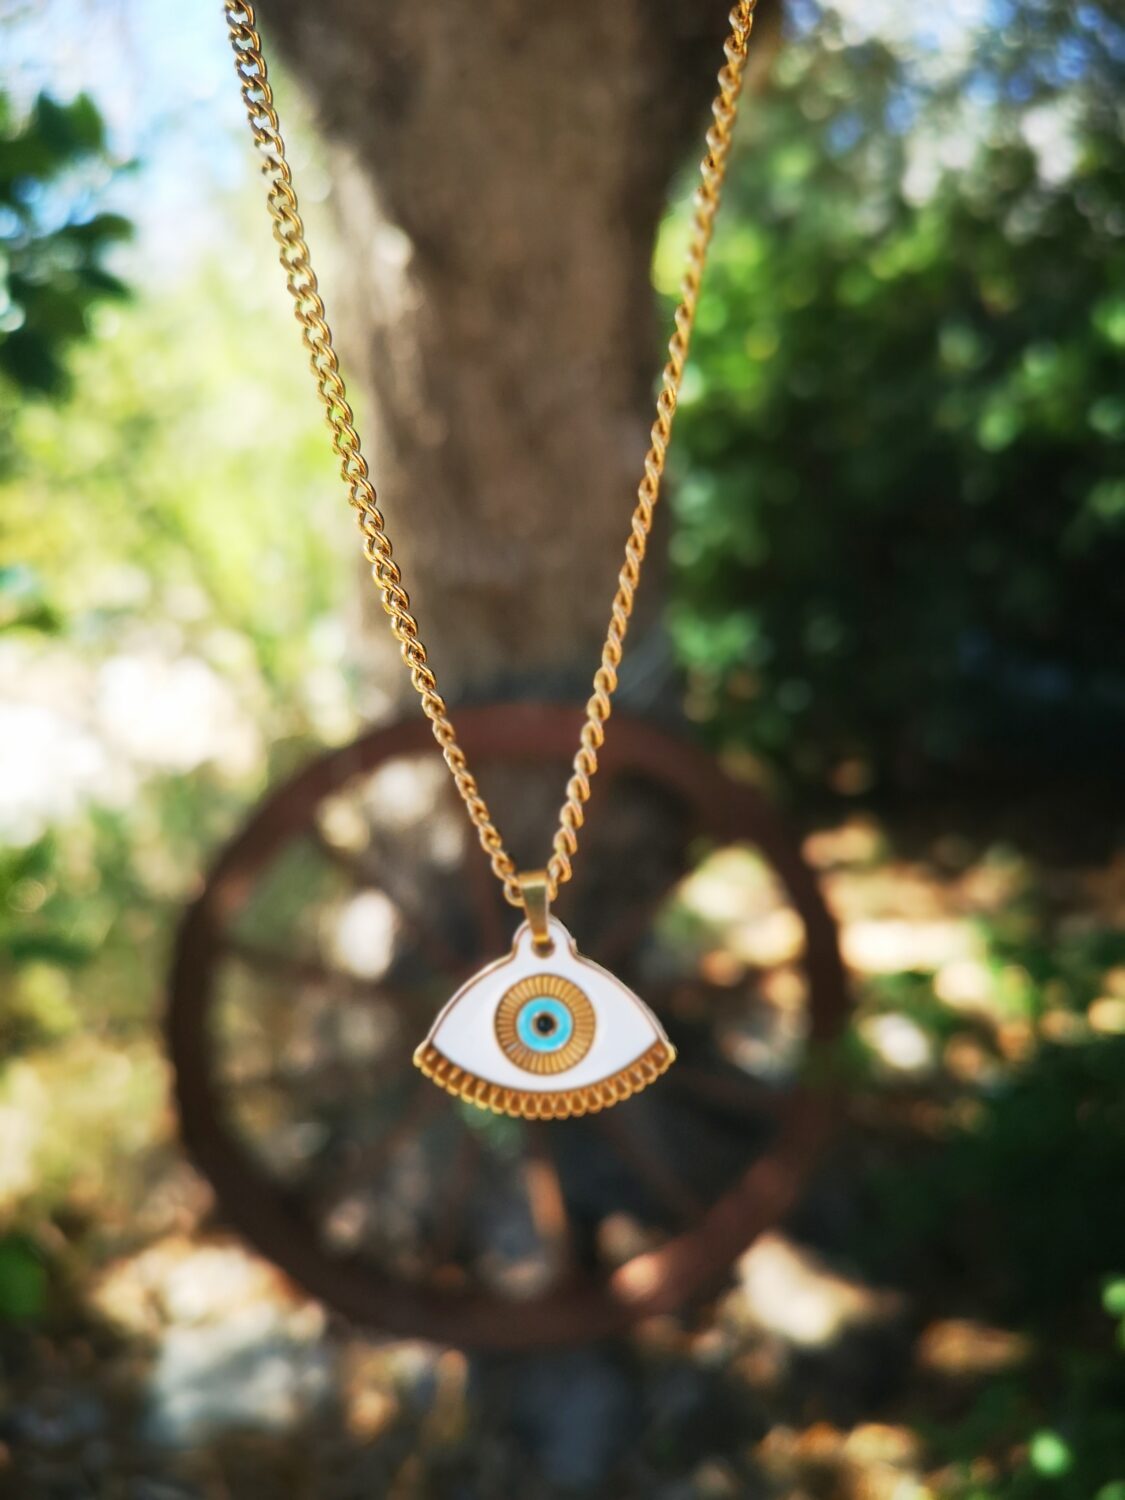 Oval Eye Necklace